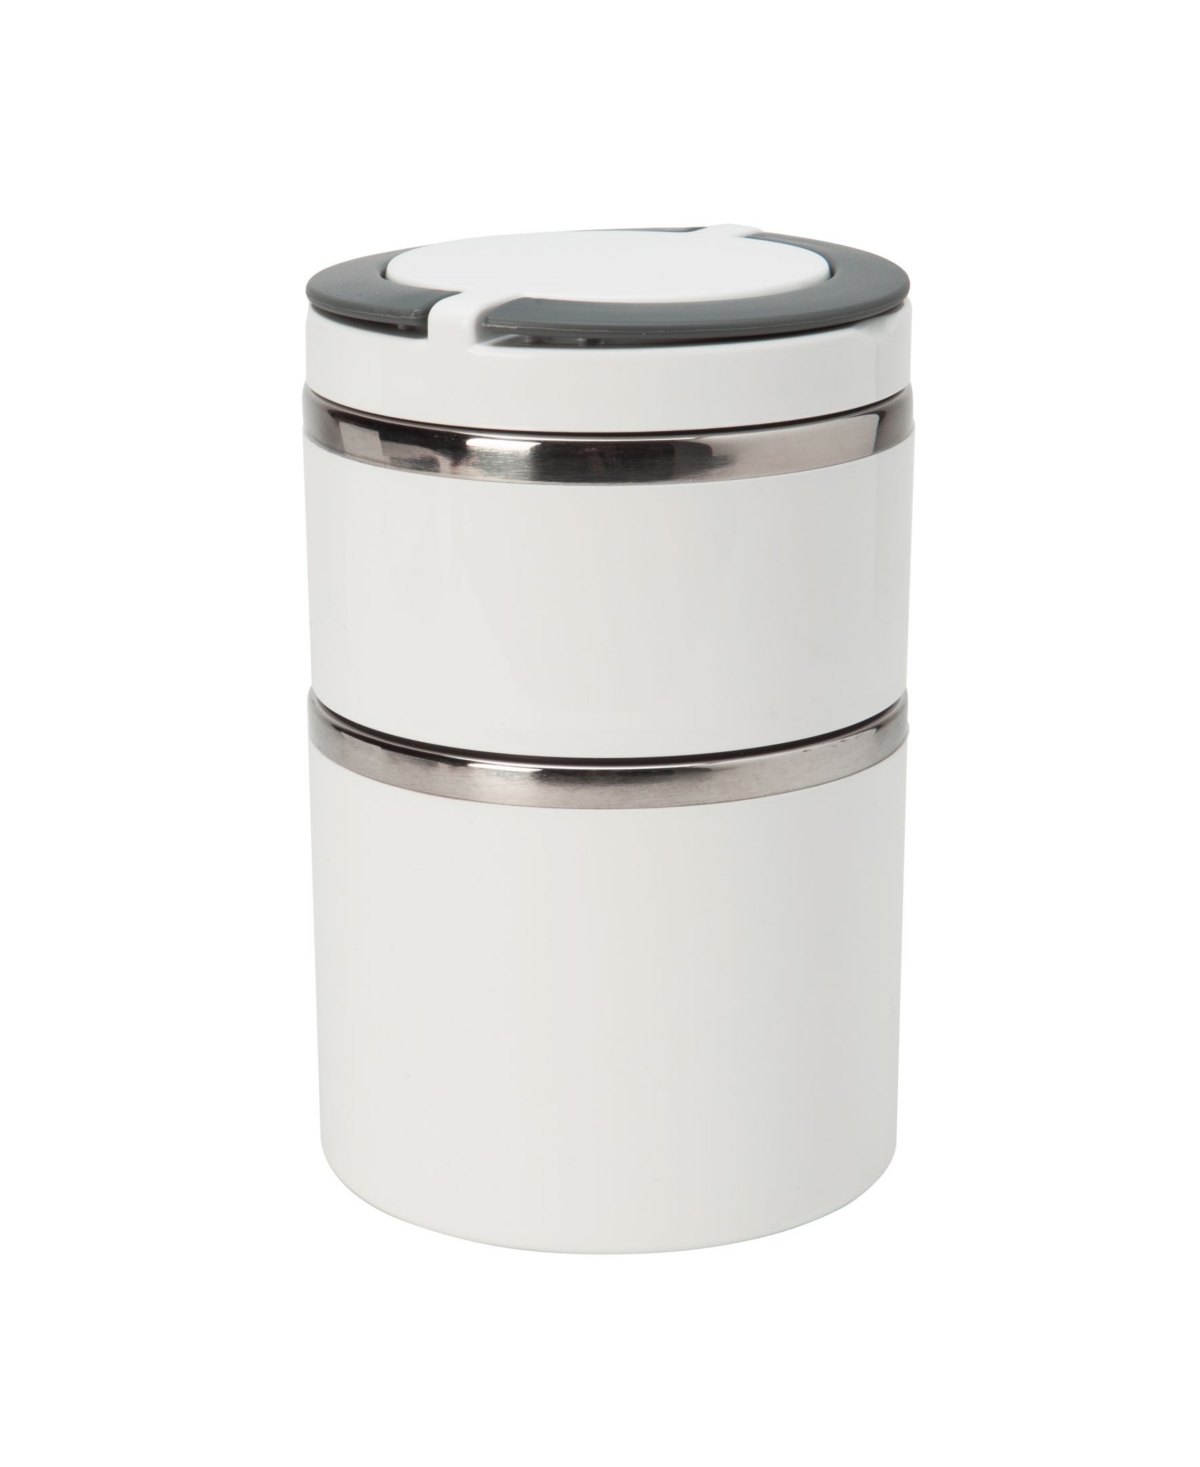 Kitchen DetailsÂ 2 Tier Round Twist Stainless Steel Insulated Lunch Box - White